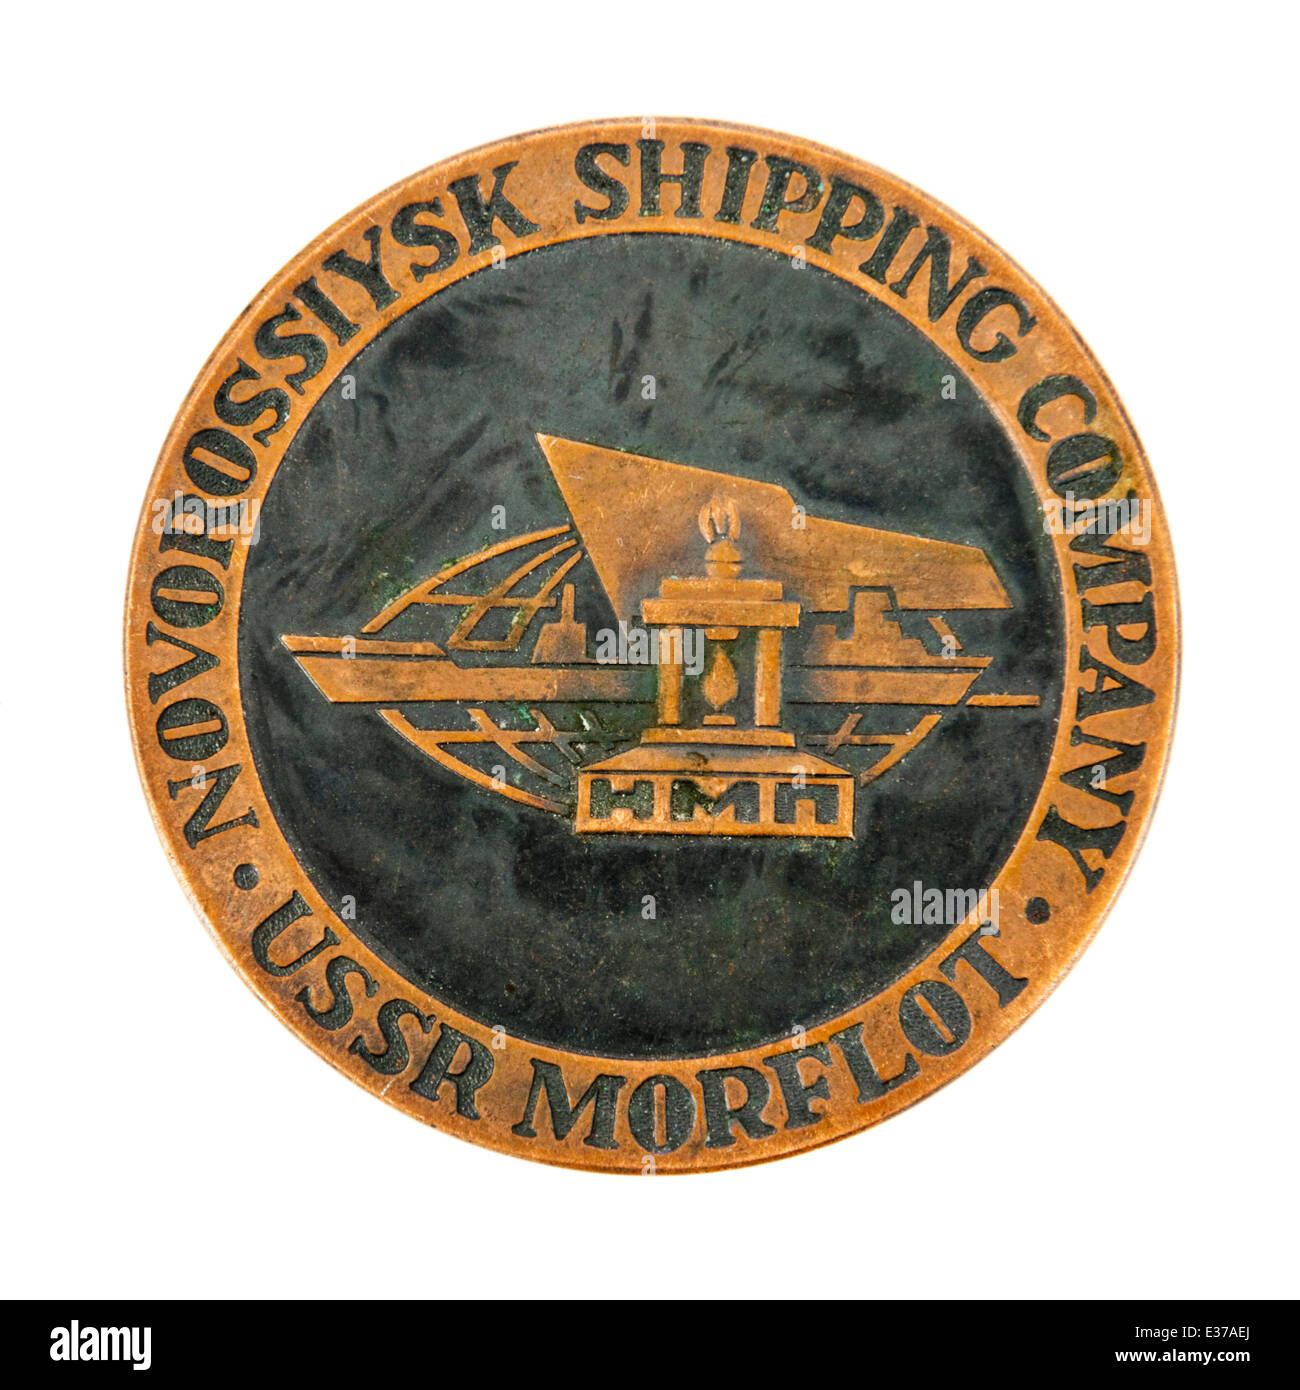 Novorossiysk Shipping Company (URSS Morflot) medaglione. Foto Stock